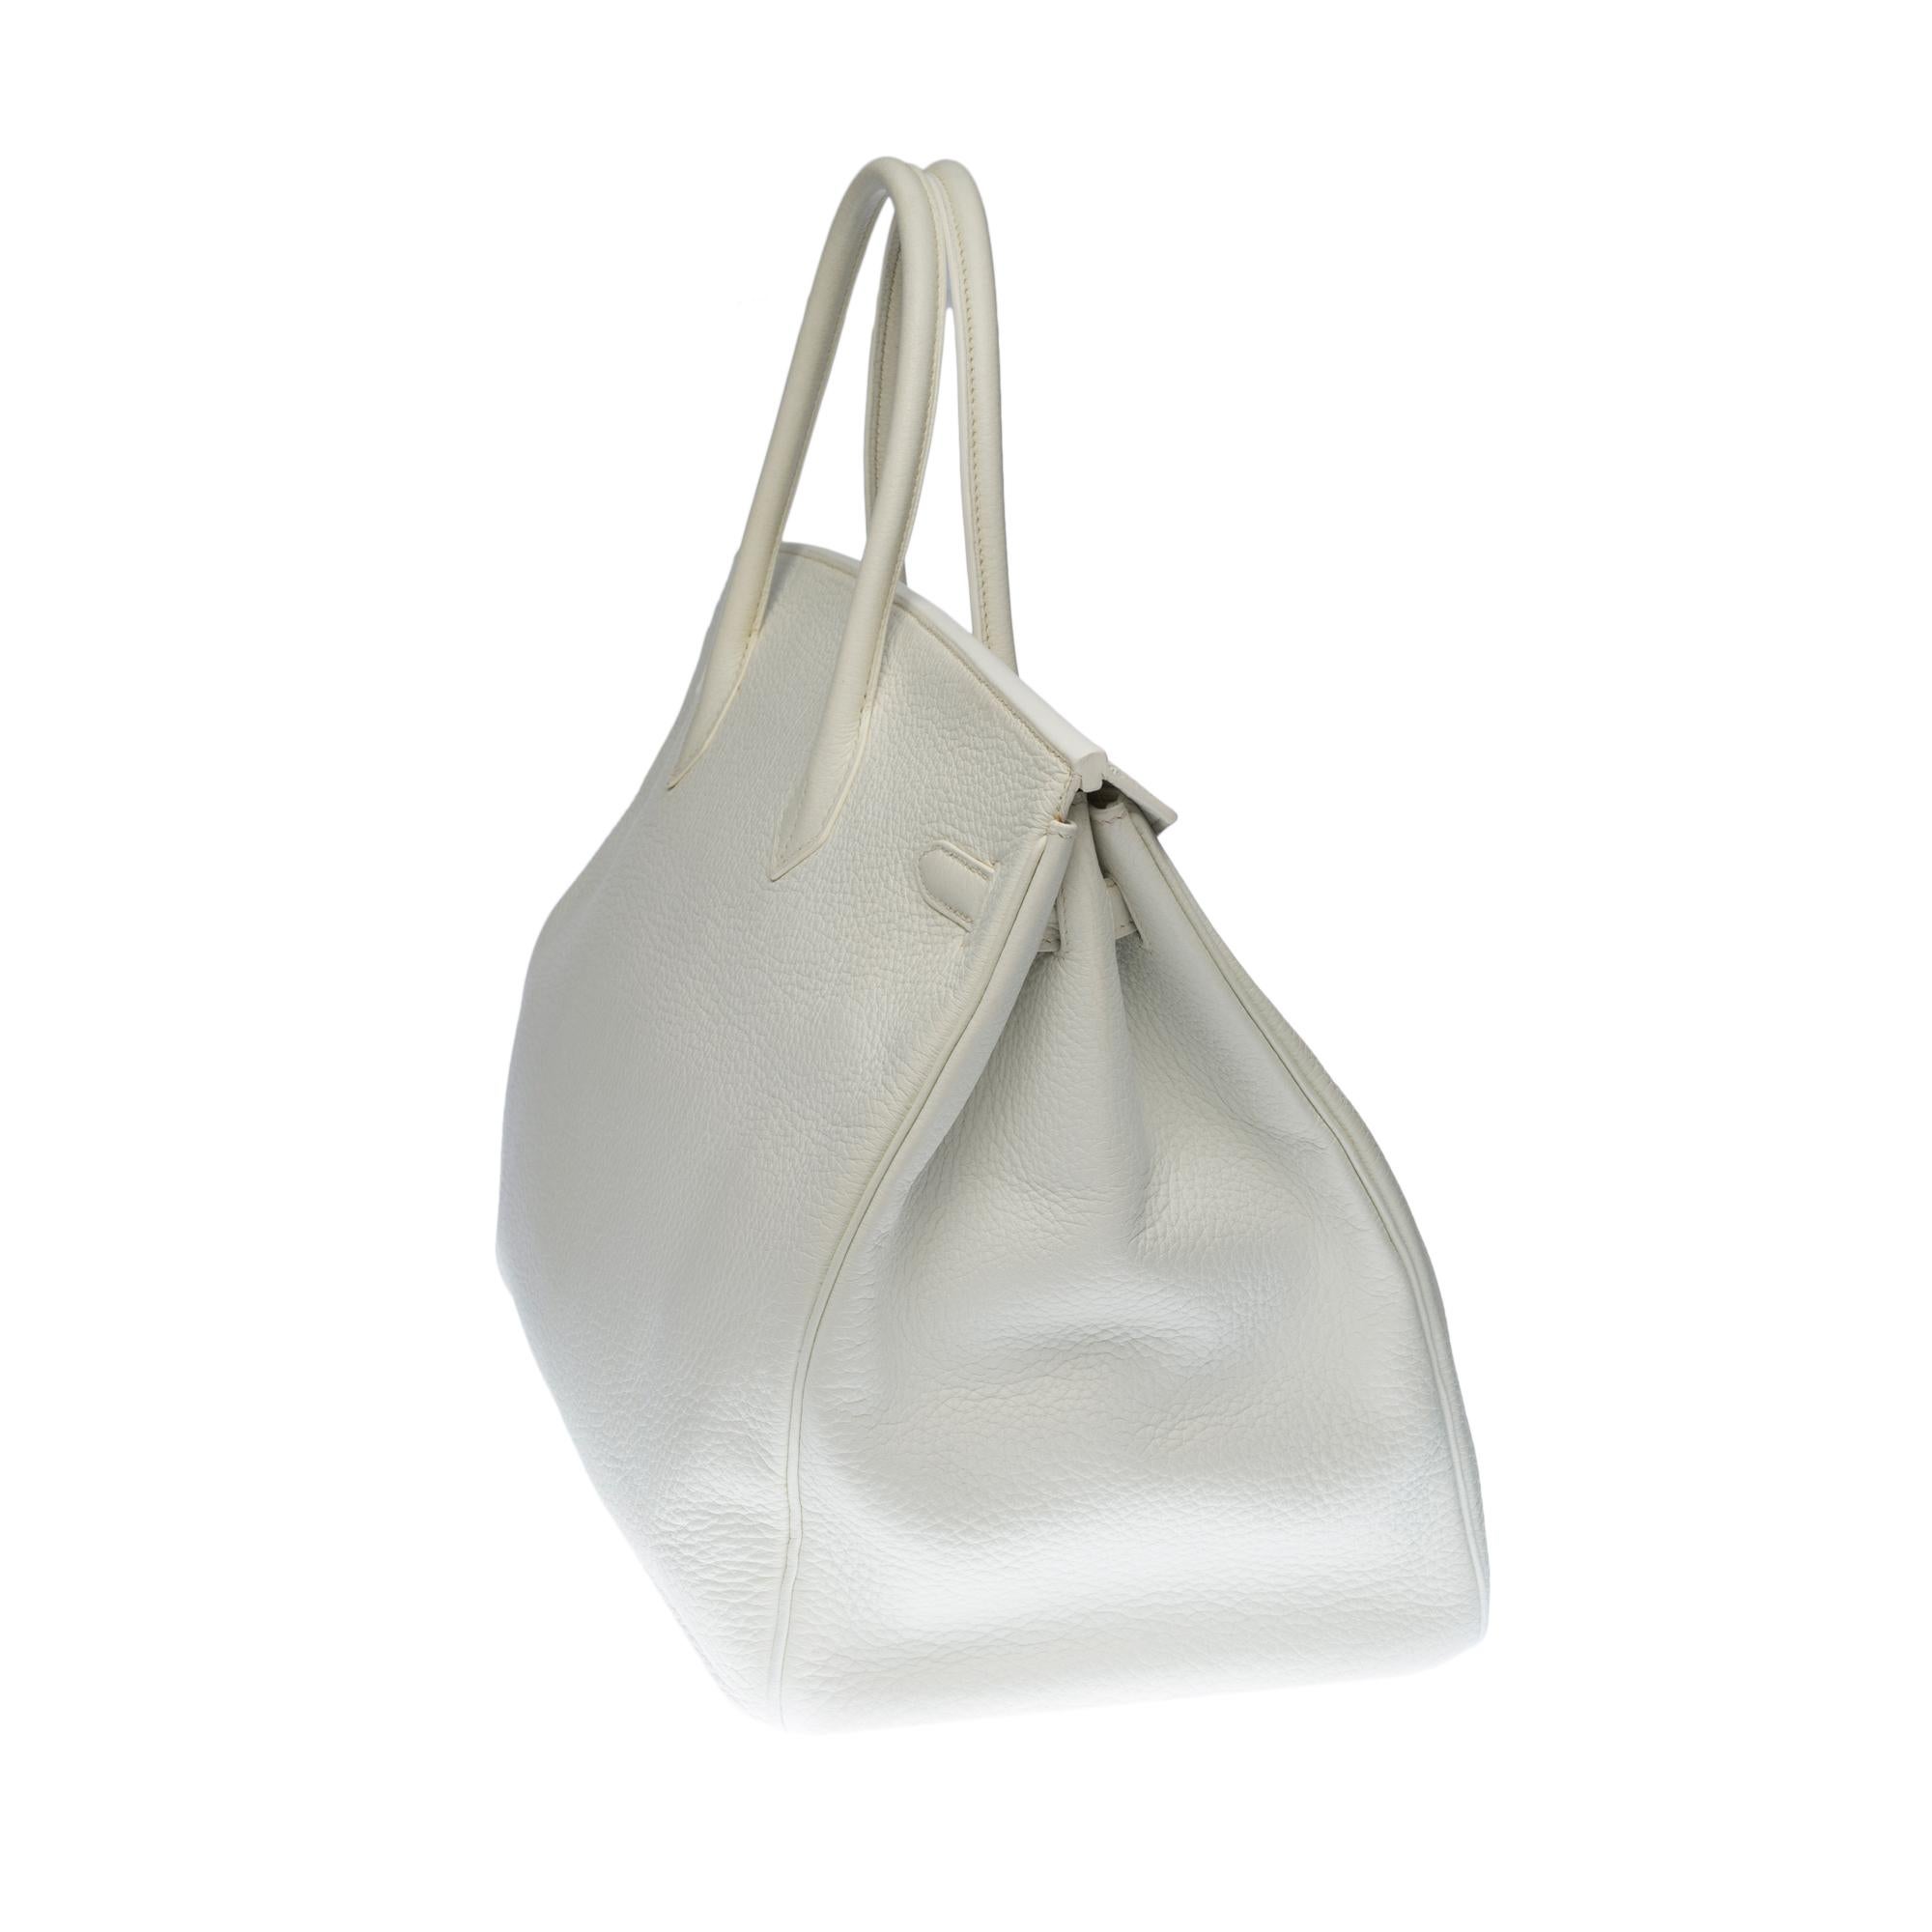 Stunning Hermes Birkin 40cm handbag in White Togo leather, SHW In Good Condition In Paris, IDF